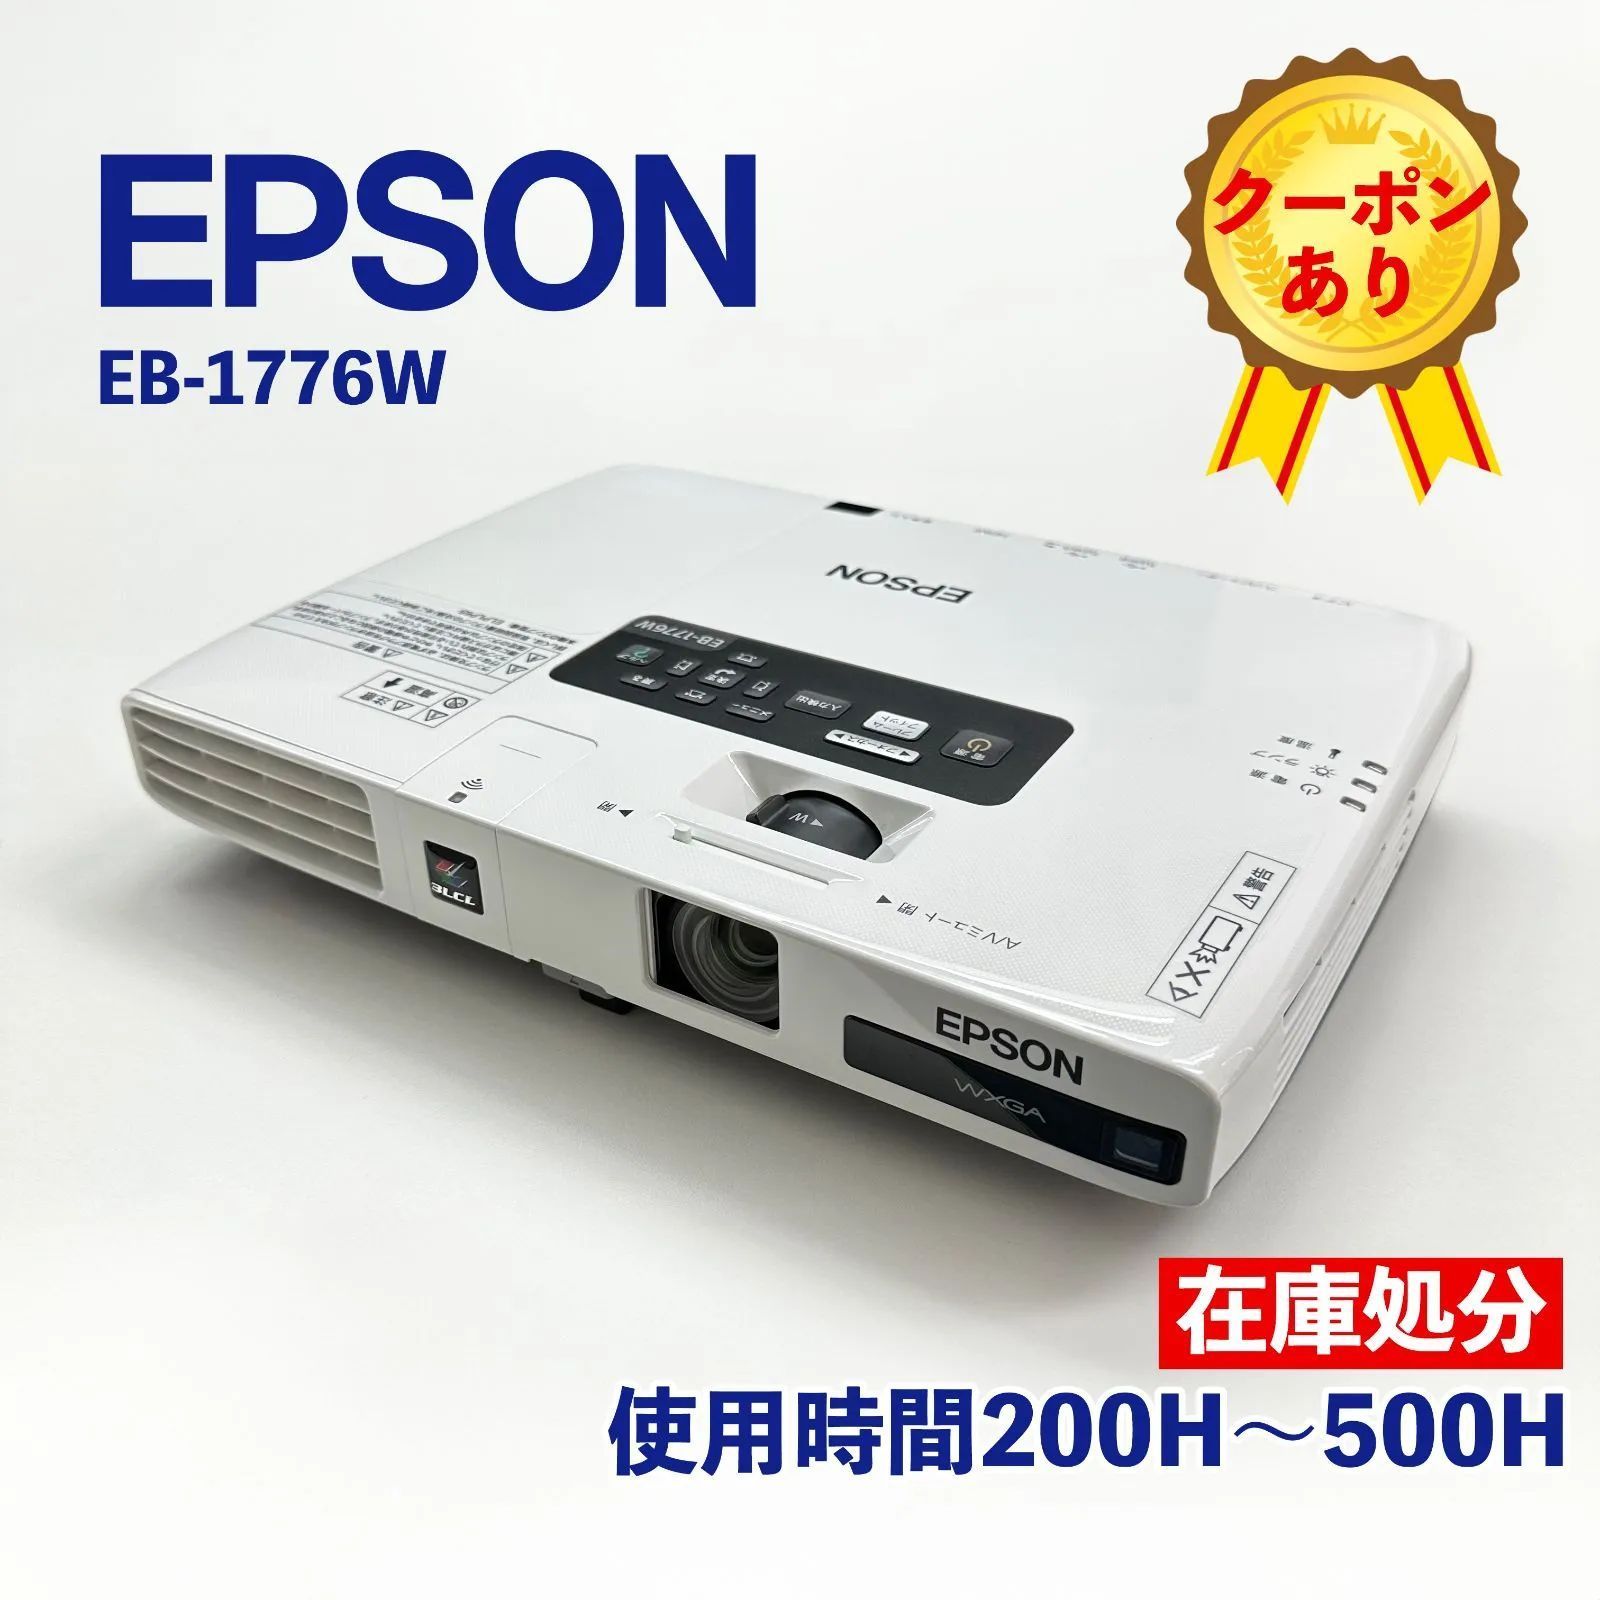 EPSON エプソン プロジェクター EB-1776W - プロジェクター、ホームシアター